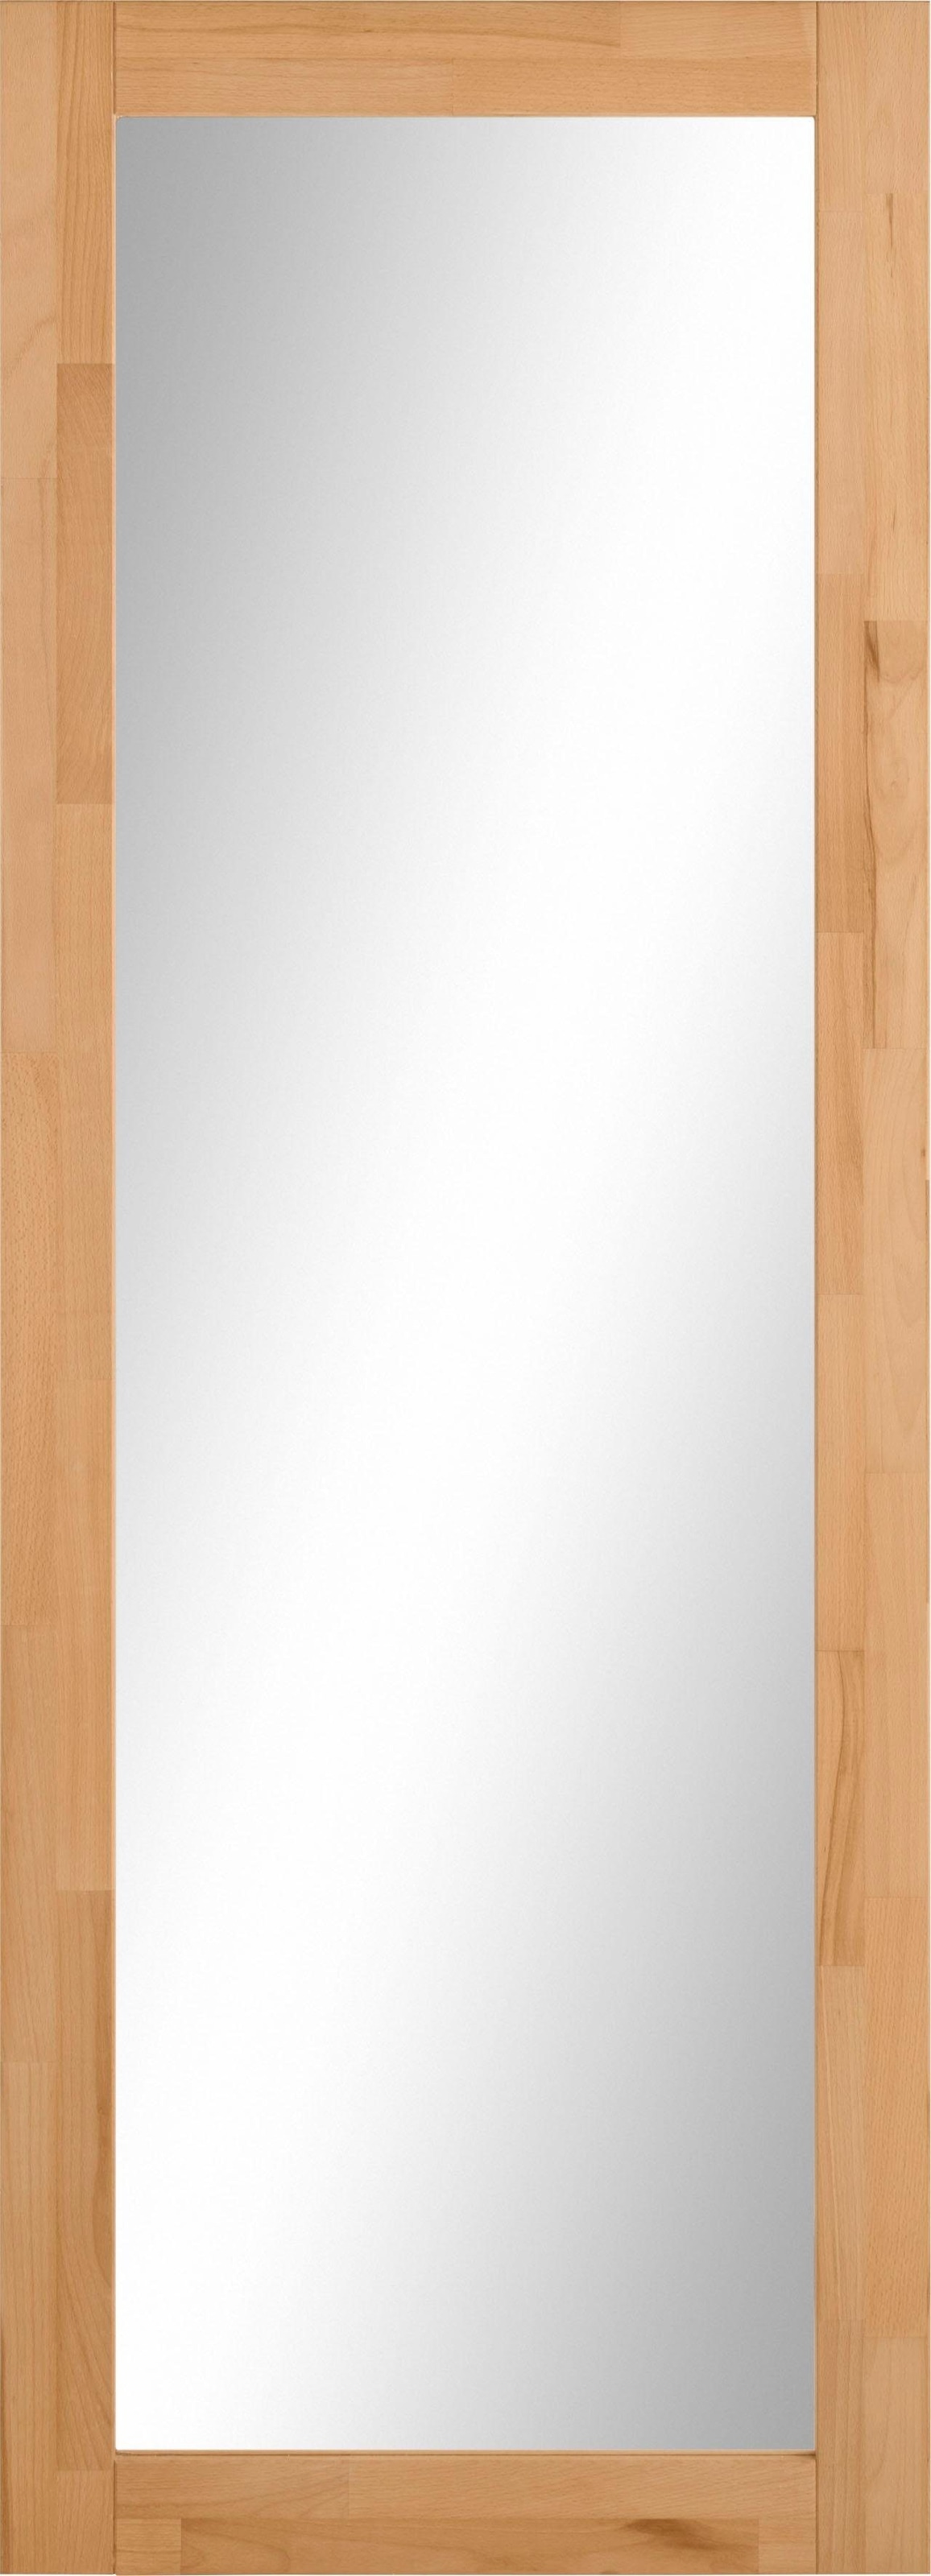 Woltra Spiegel »Maximus«, Höhe 180 cm kaufen | BAUR